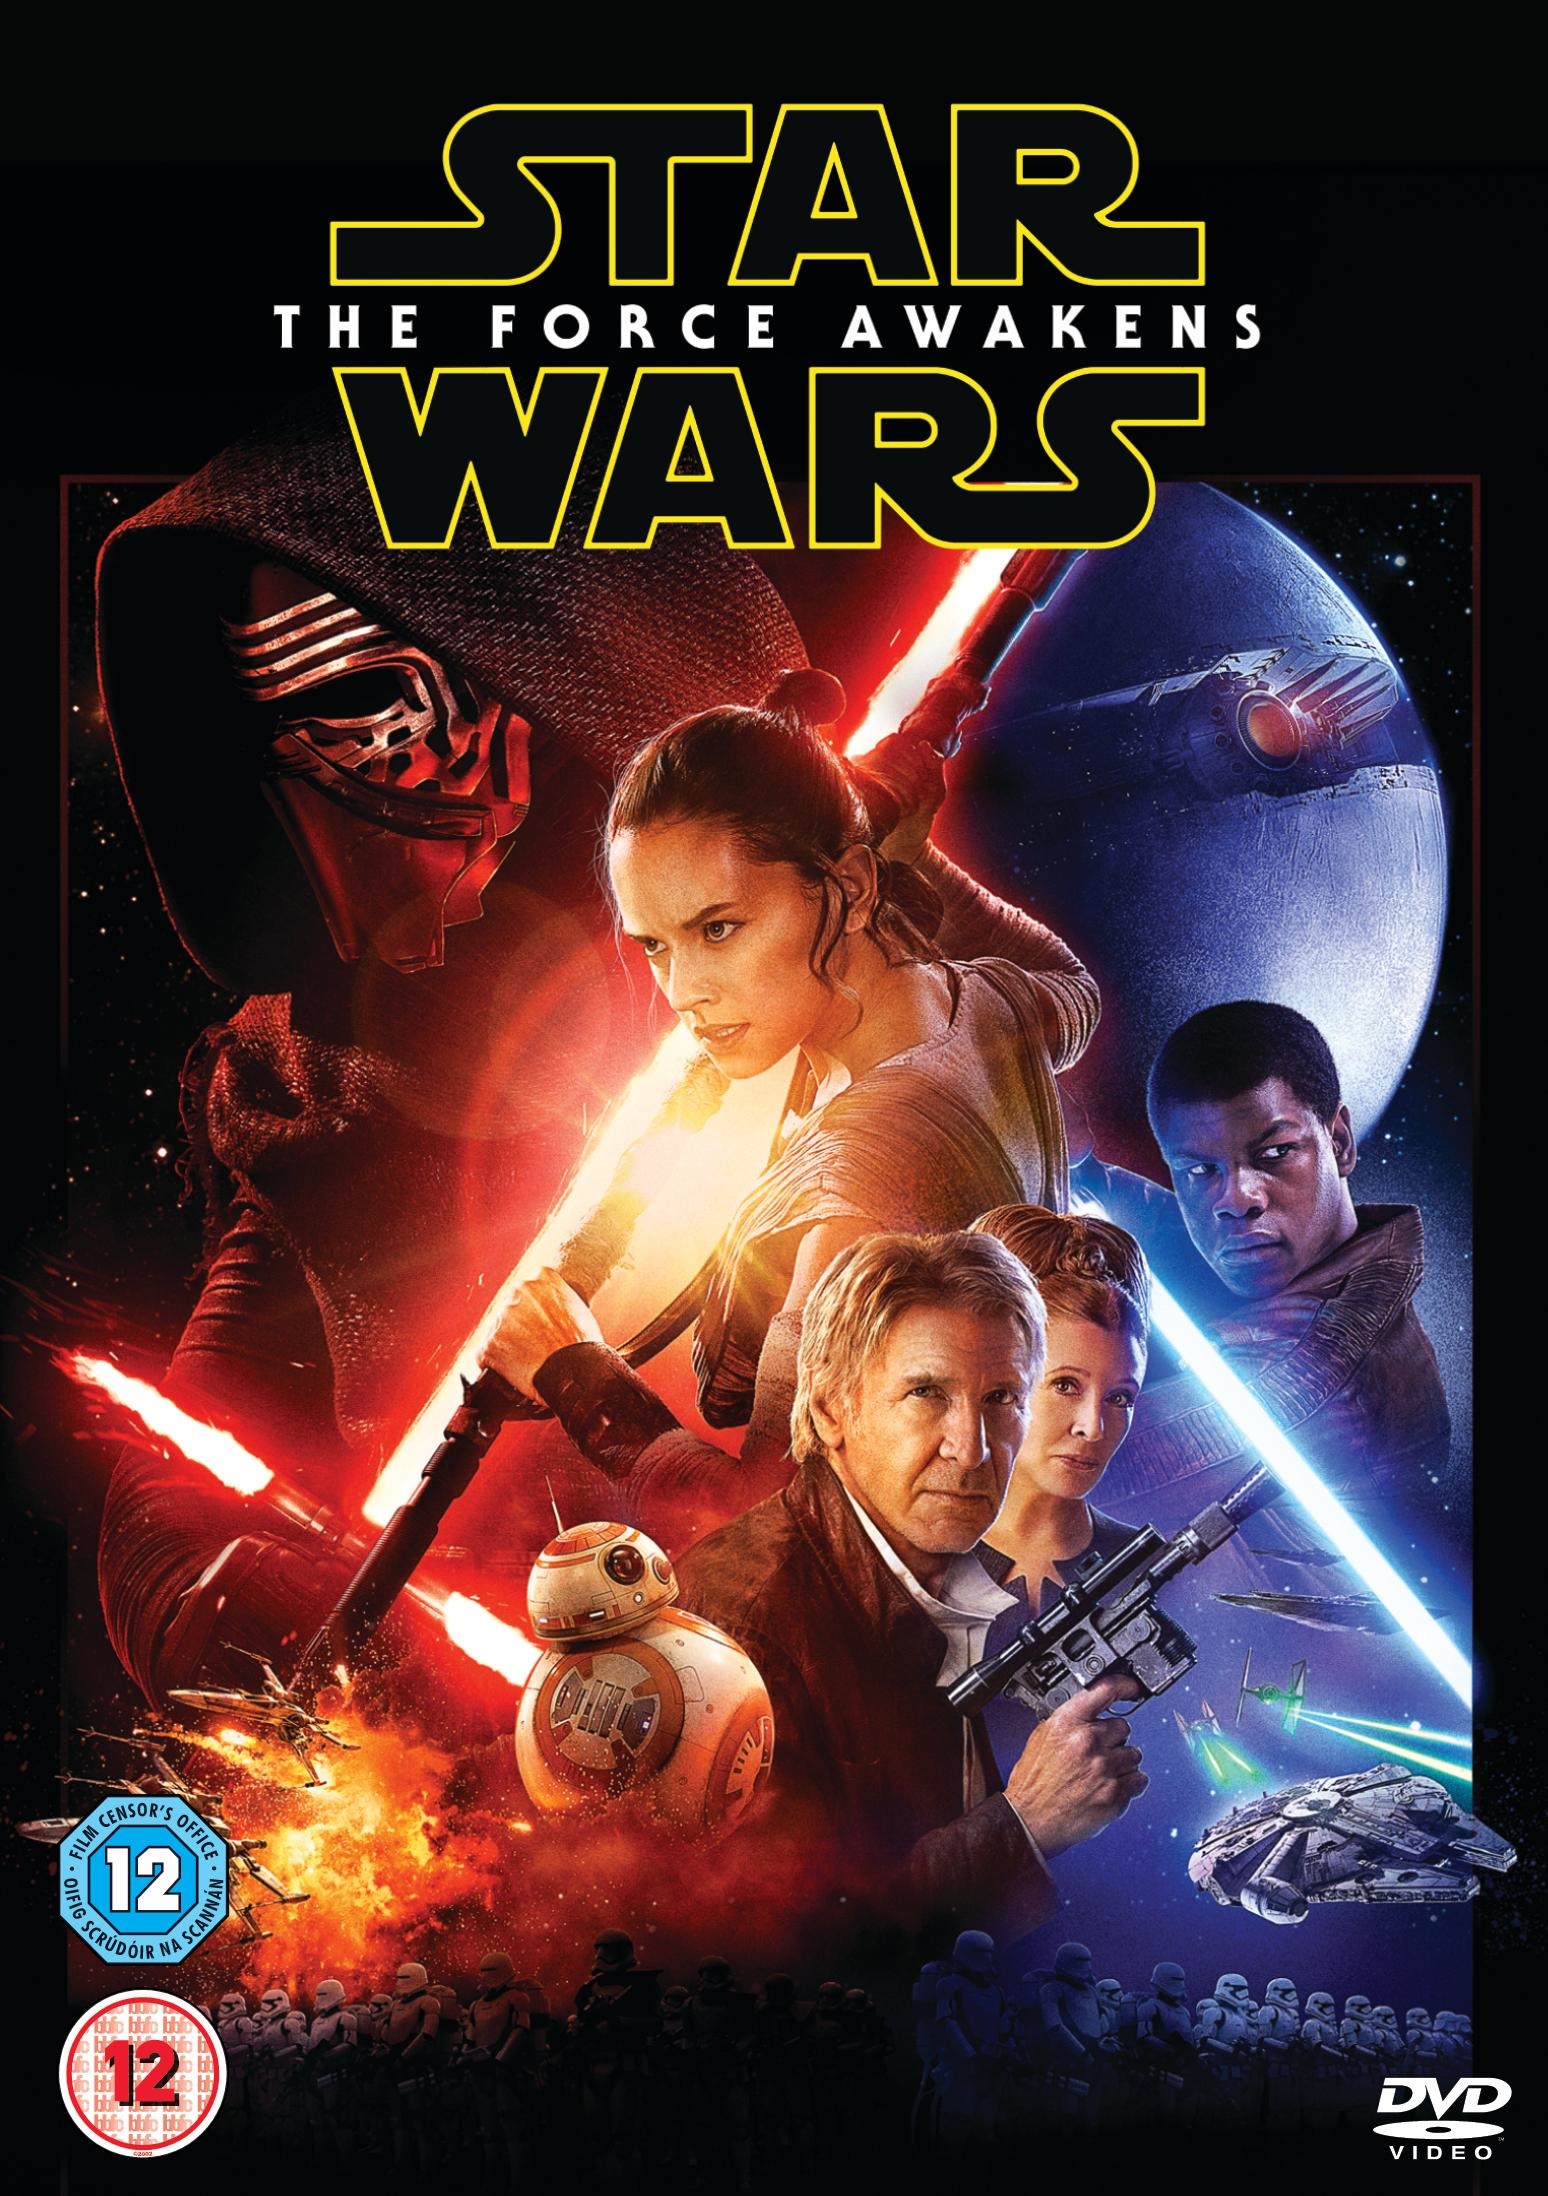 Star-Wars-The-Force-Awakens-DVD-Cover-UK.jpg